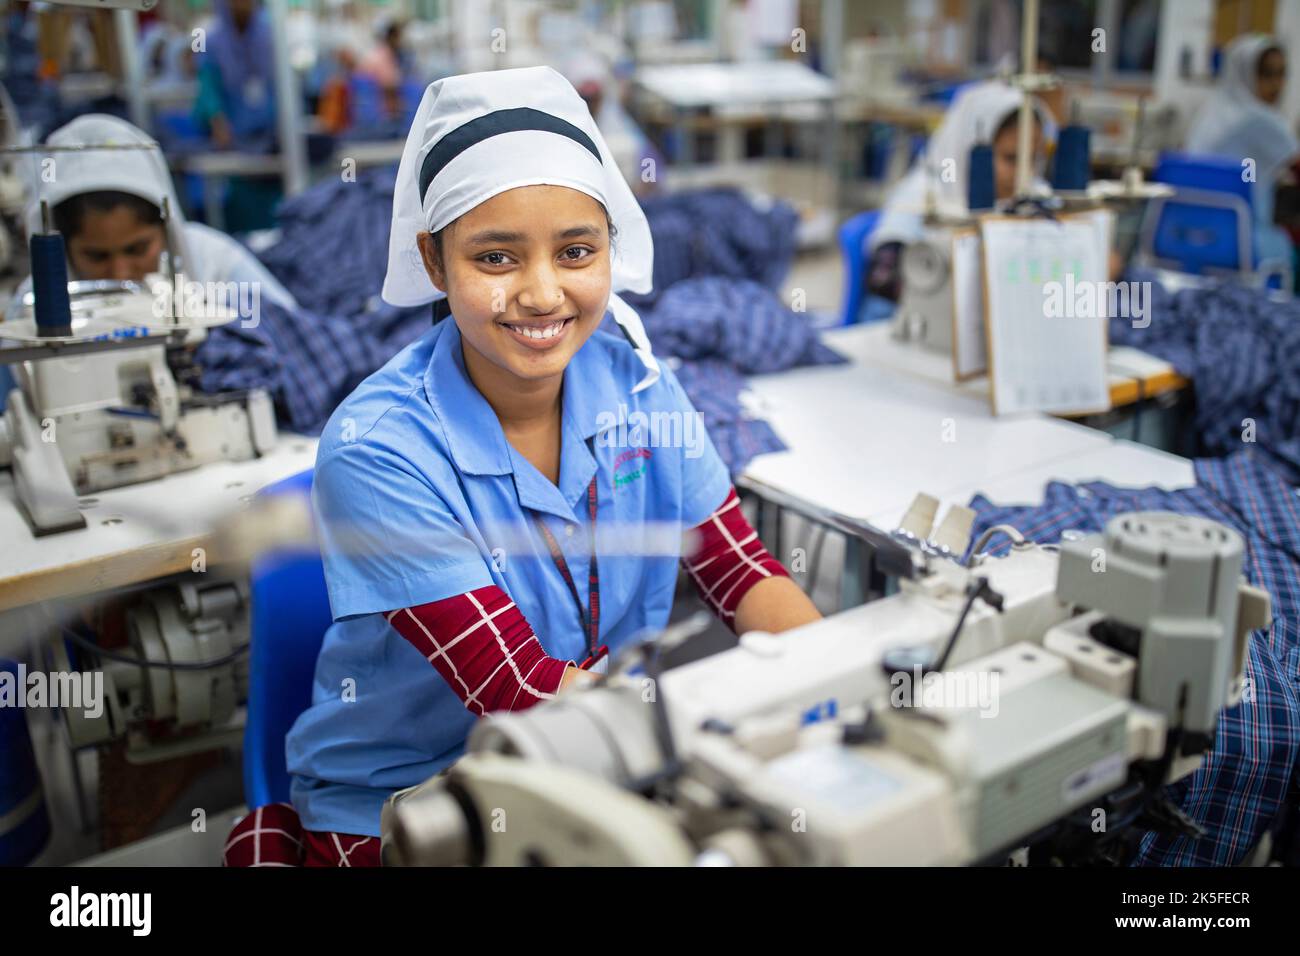 Un ouvrier du vêtement travaille dans une usine de vêtements readymade. L'industrie du vêtement prêt-à-porter (RMG) est un pilier de cette réussite économique. Banque D'Images